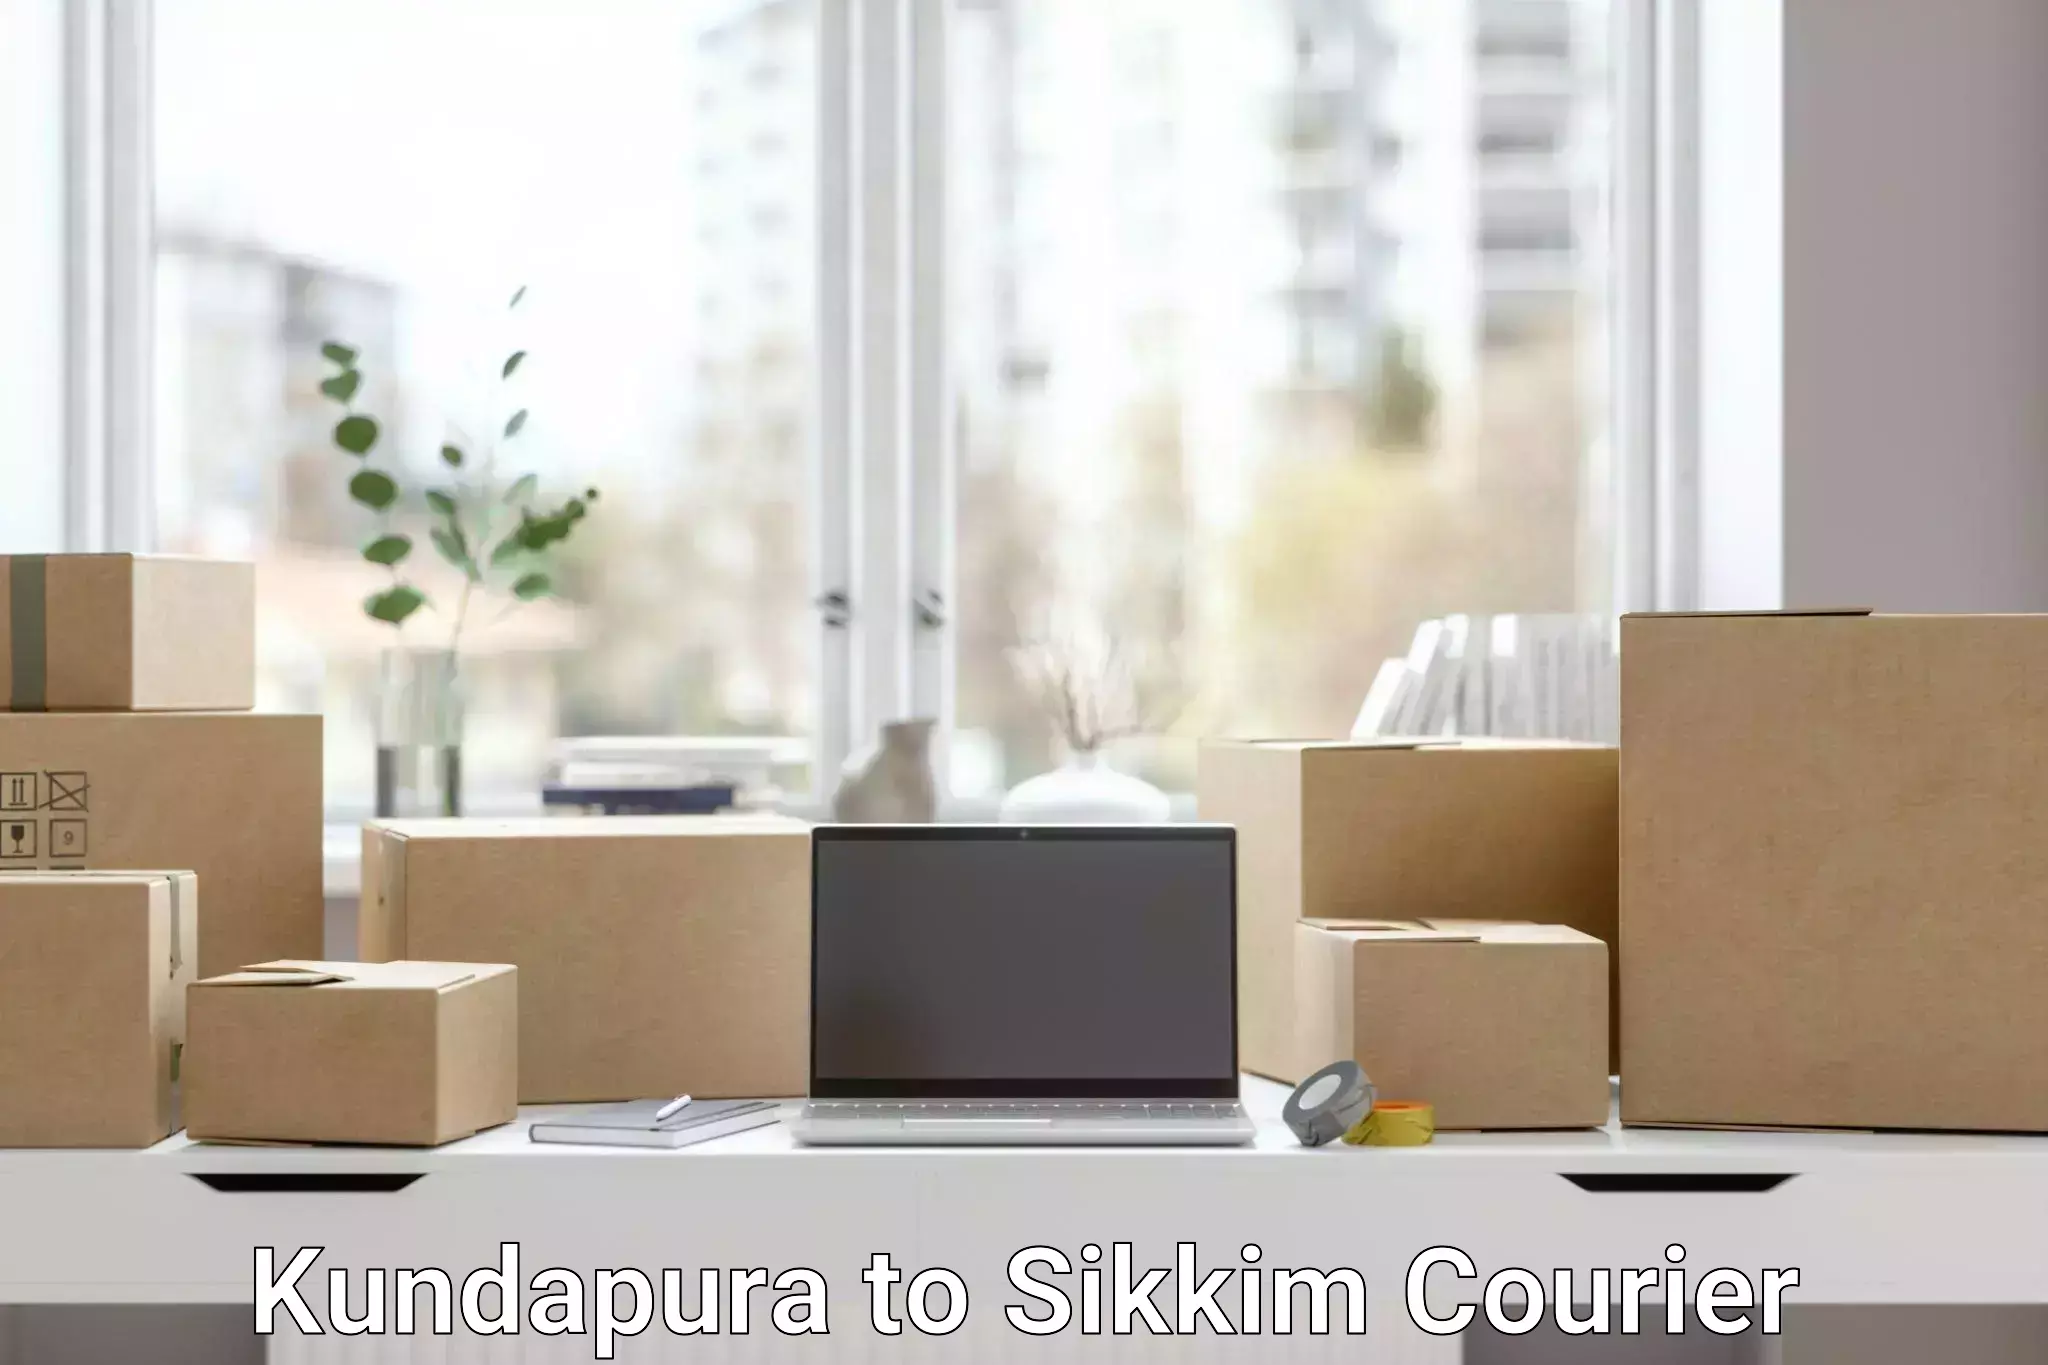 Package forwarding Kundapura to Sikkim